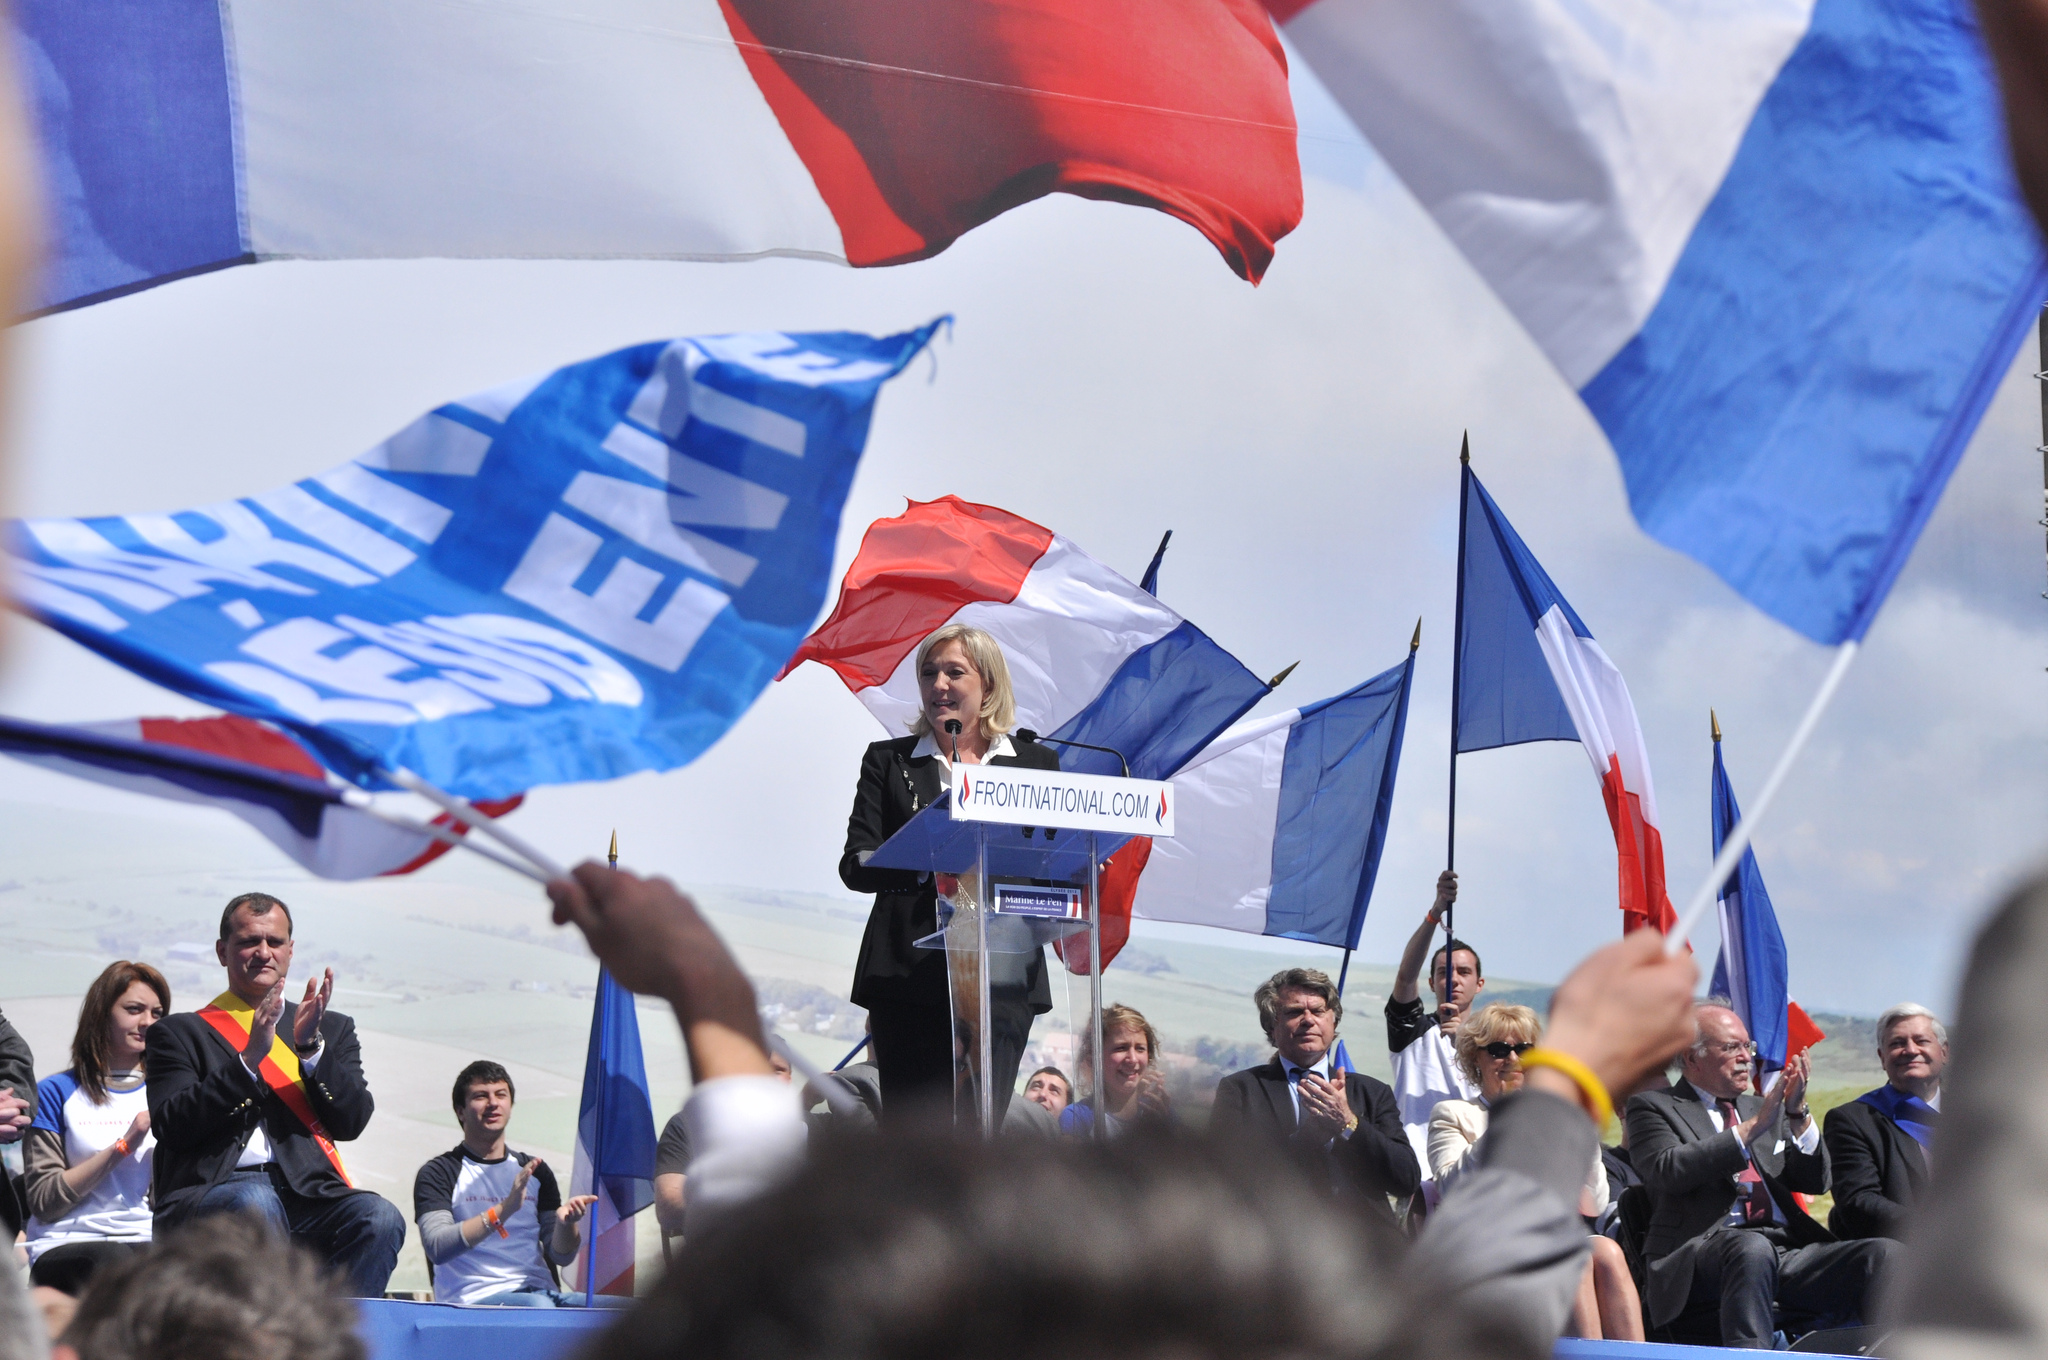 Марин Ле Пен с речью на митинге партии «Национальный фронт» [(сс) Blandine Le Cain]